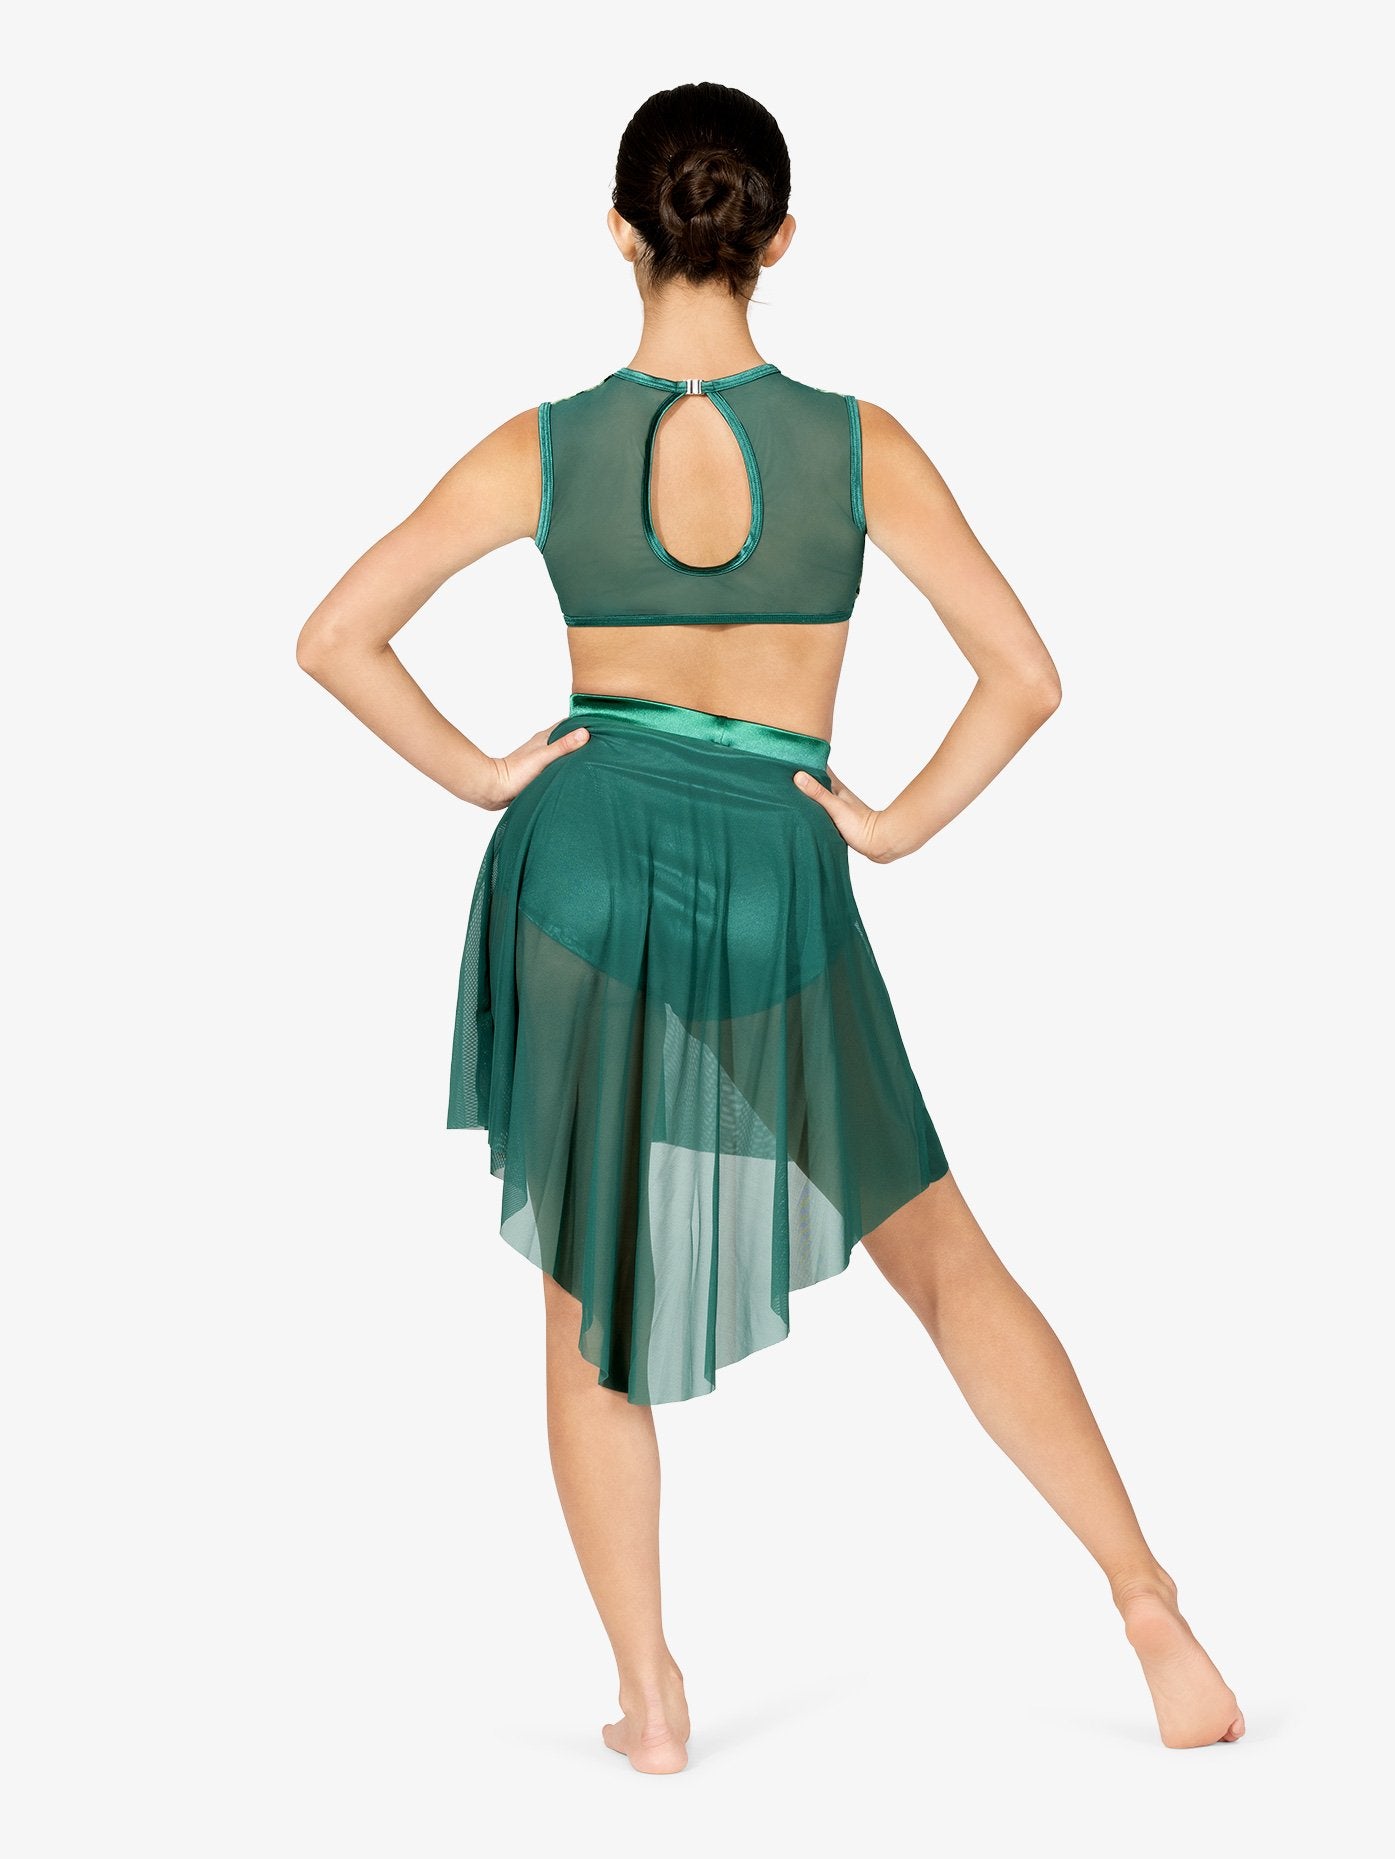 ダブルプラチナム ハイロー・パフォーマンス・スカート - エメラルド【大人】Double Platinum Womens High-Low Performance Skirt - Emerald